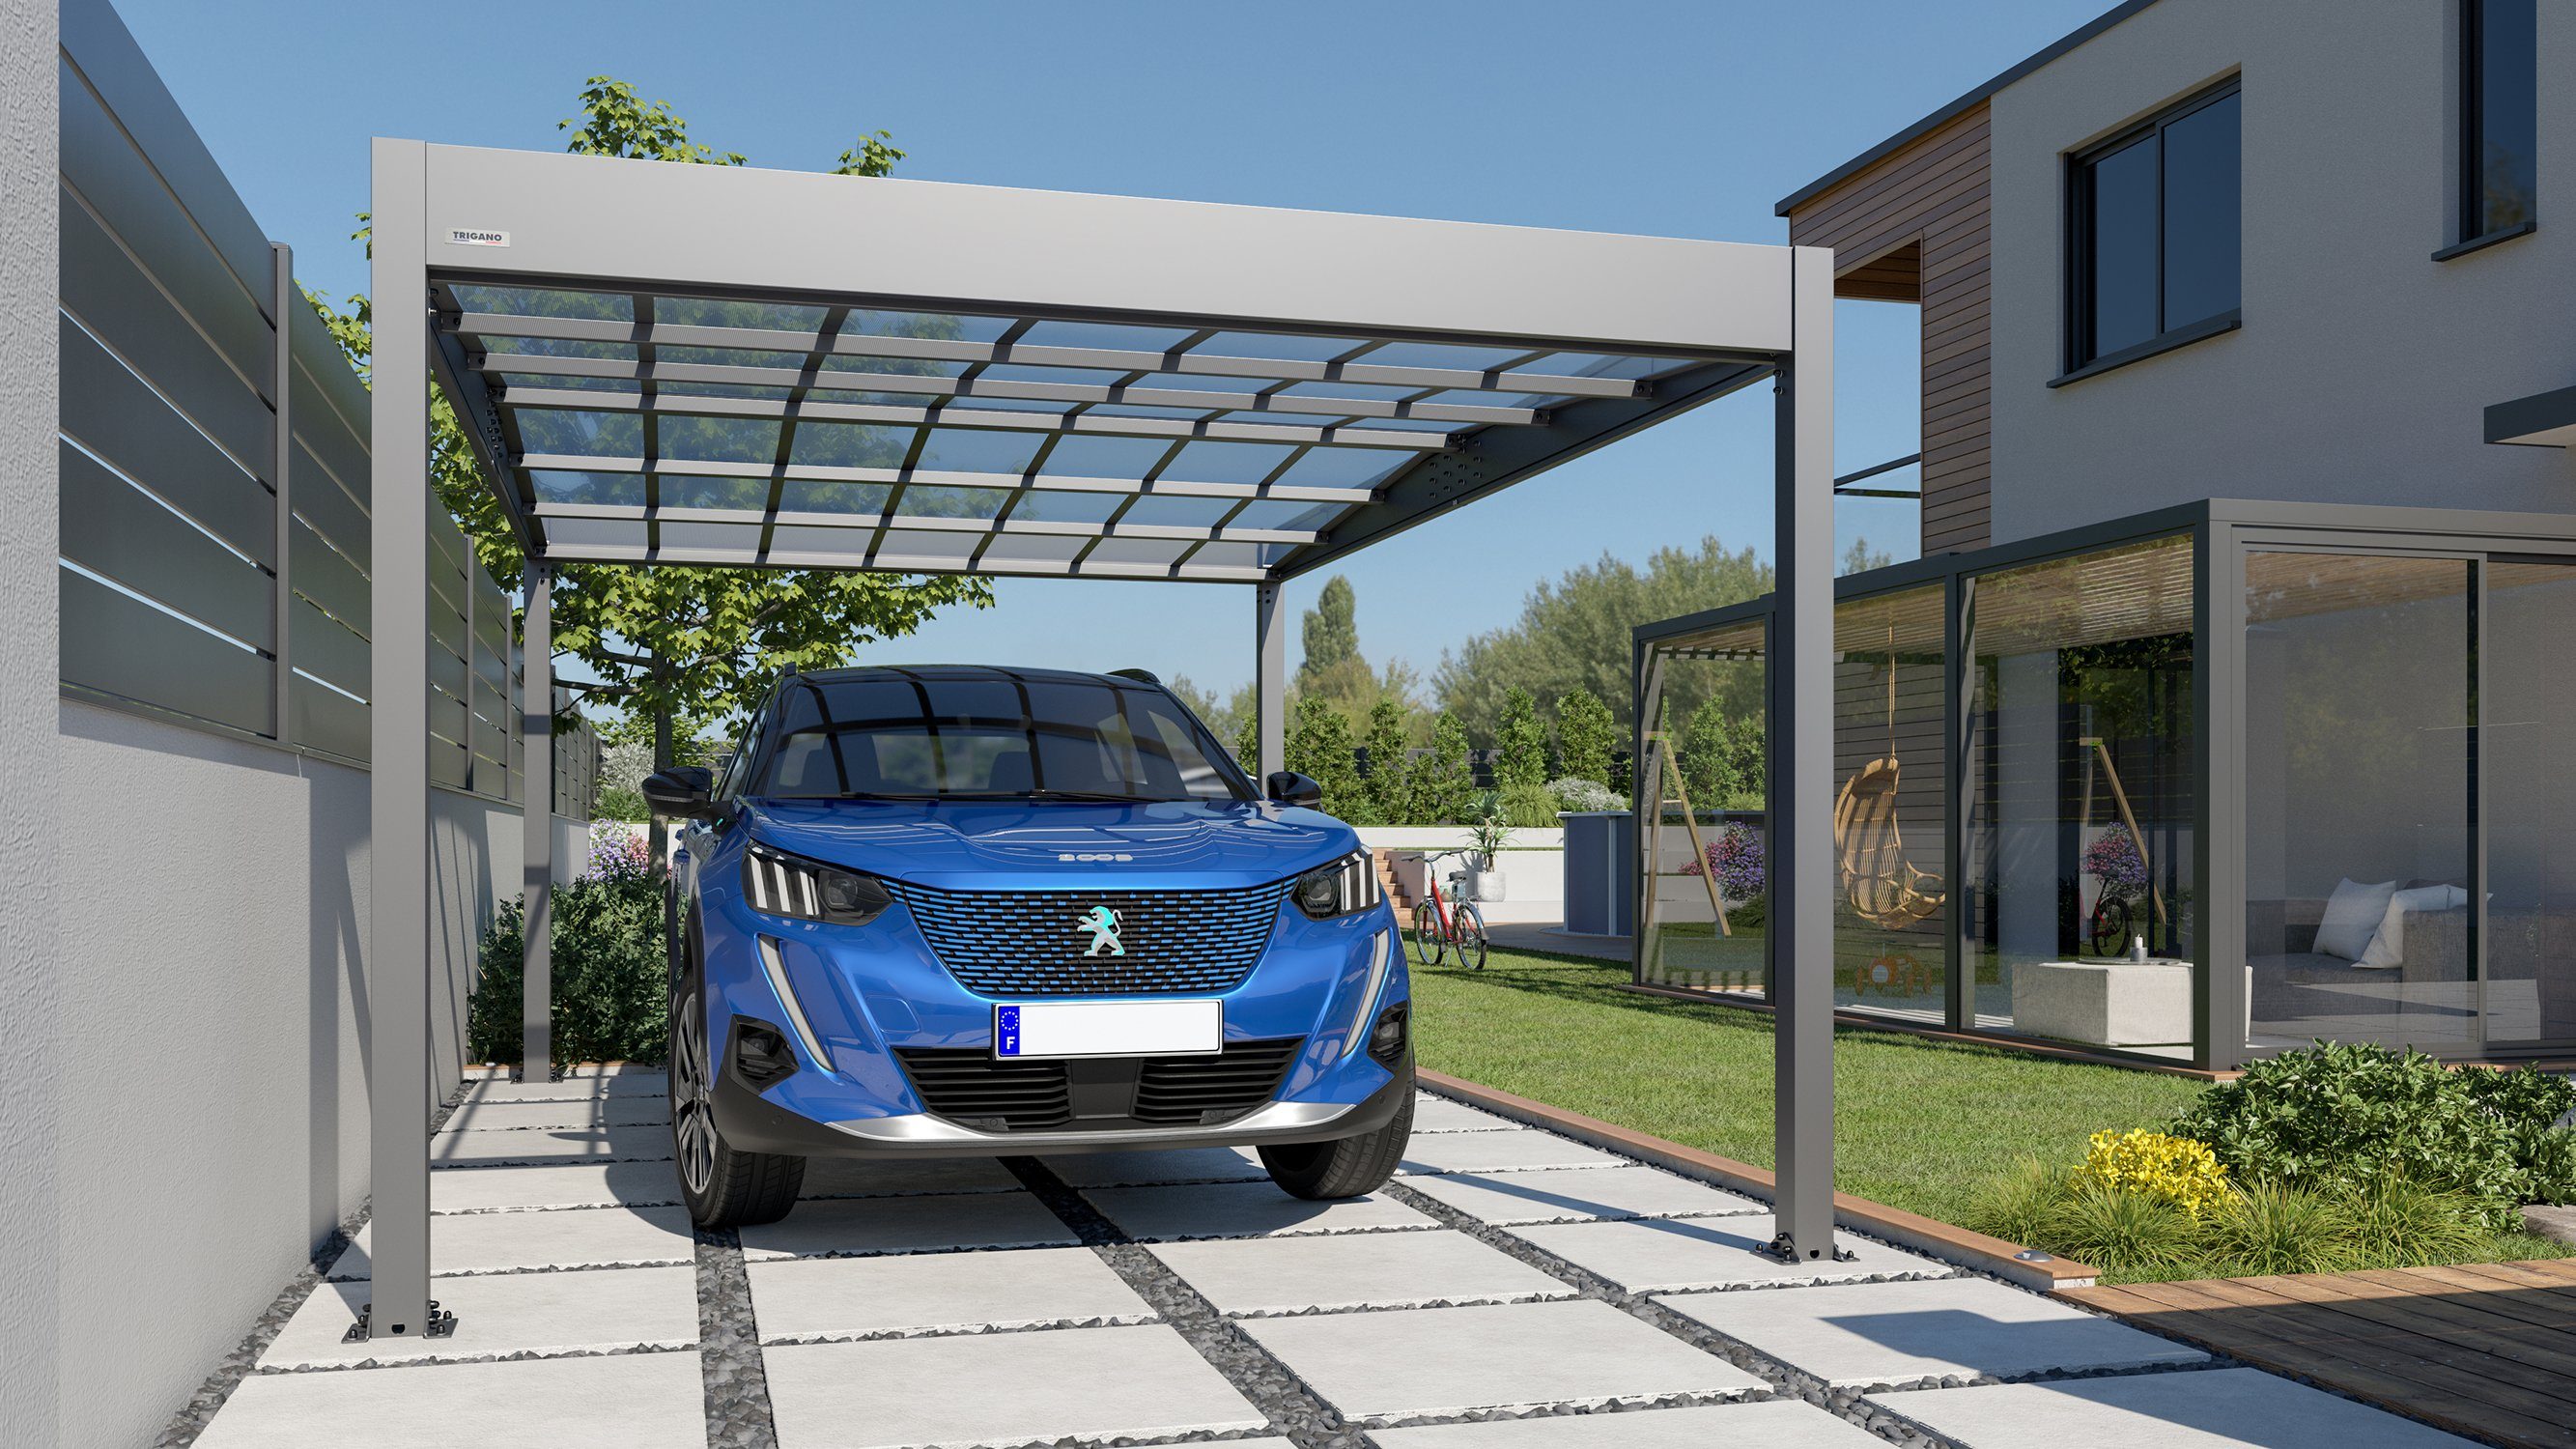 Trigano Einzelcarport Carport Libeccio Metall 16.60 m2 aus Aluminium, 2,10 cm Einfahrtshöhe, robuste Konstruktion, Doppeldach